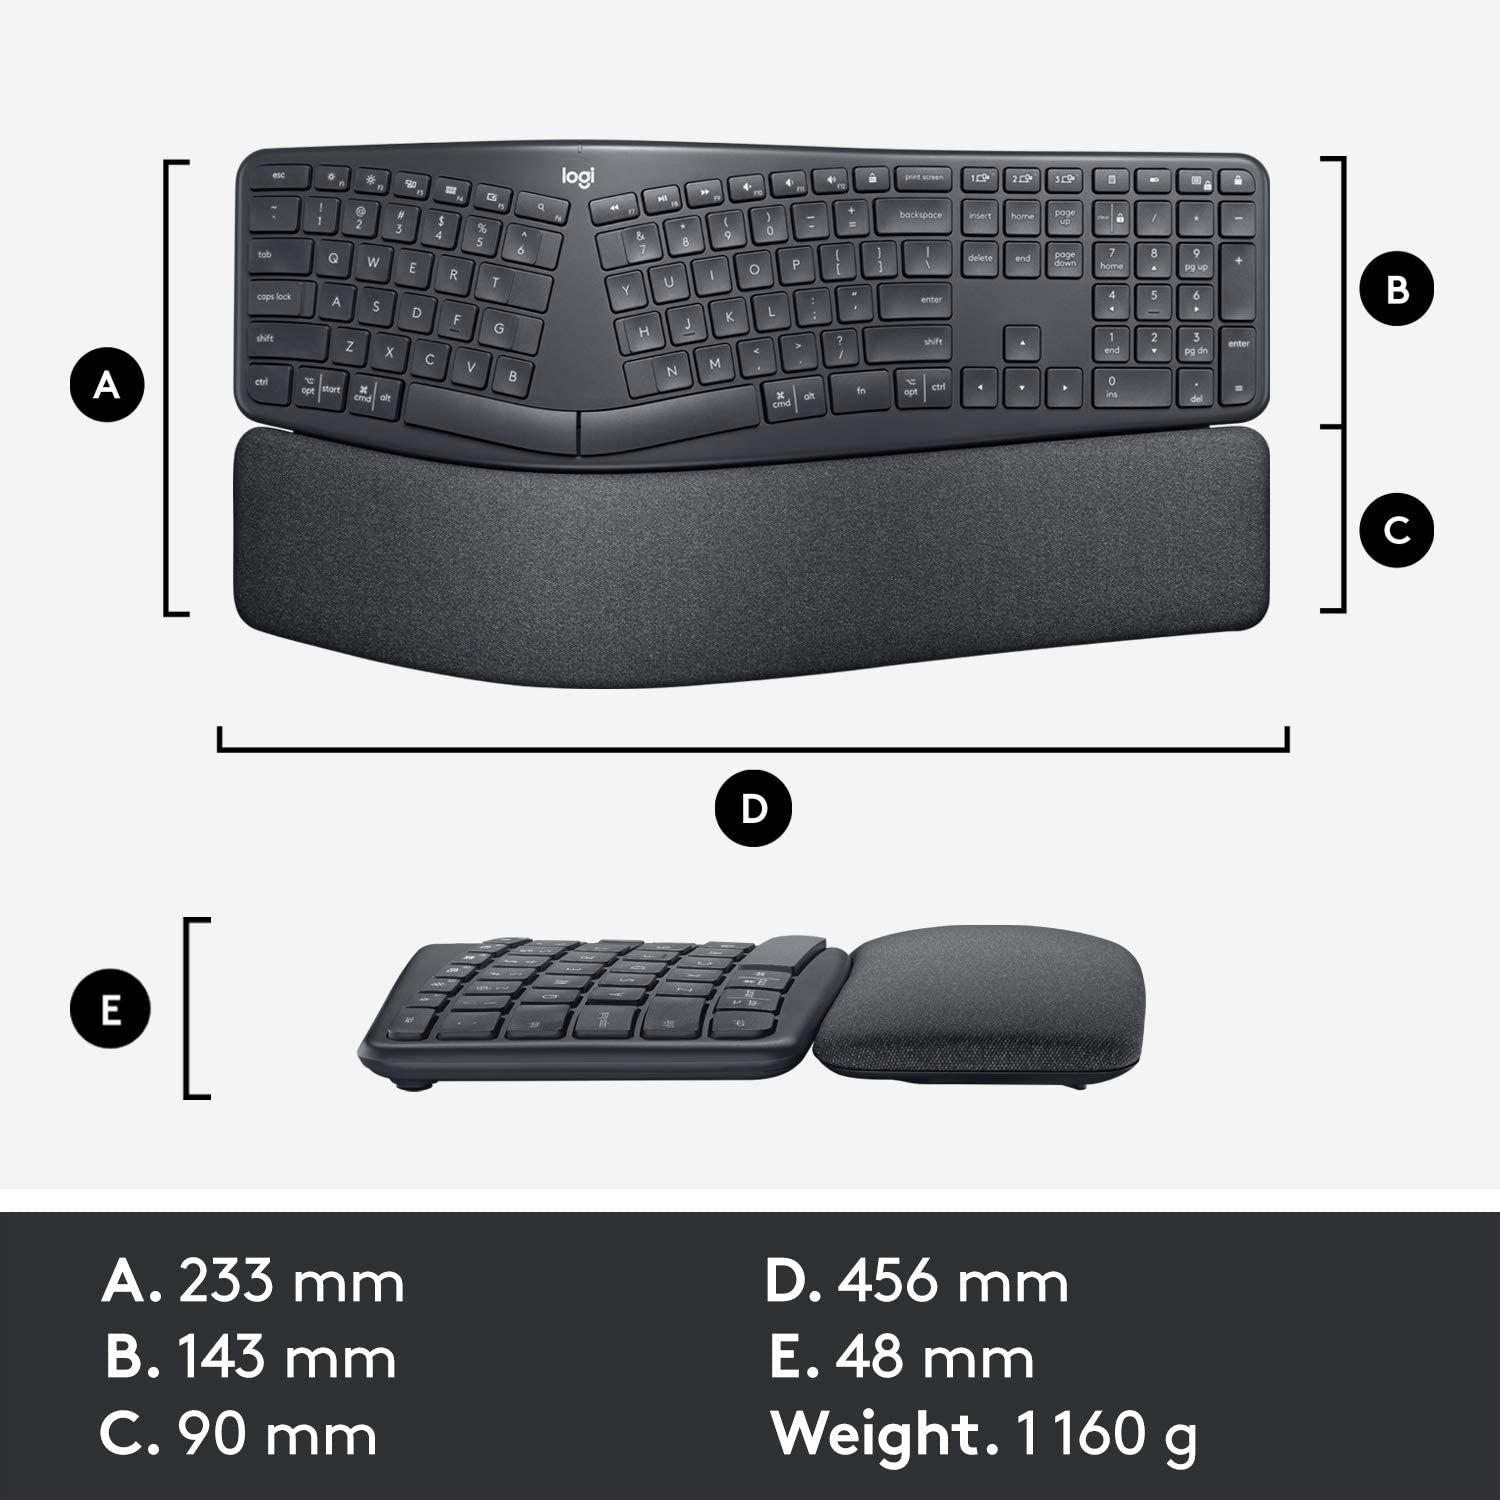 Logitech Ergo K860 Wireless Ergonomic Keyboard with Wrist Rest dimensions